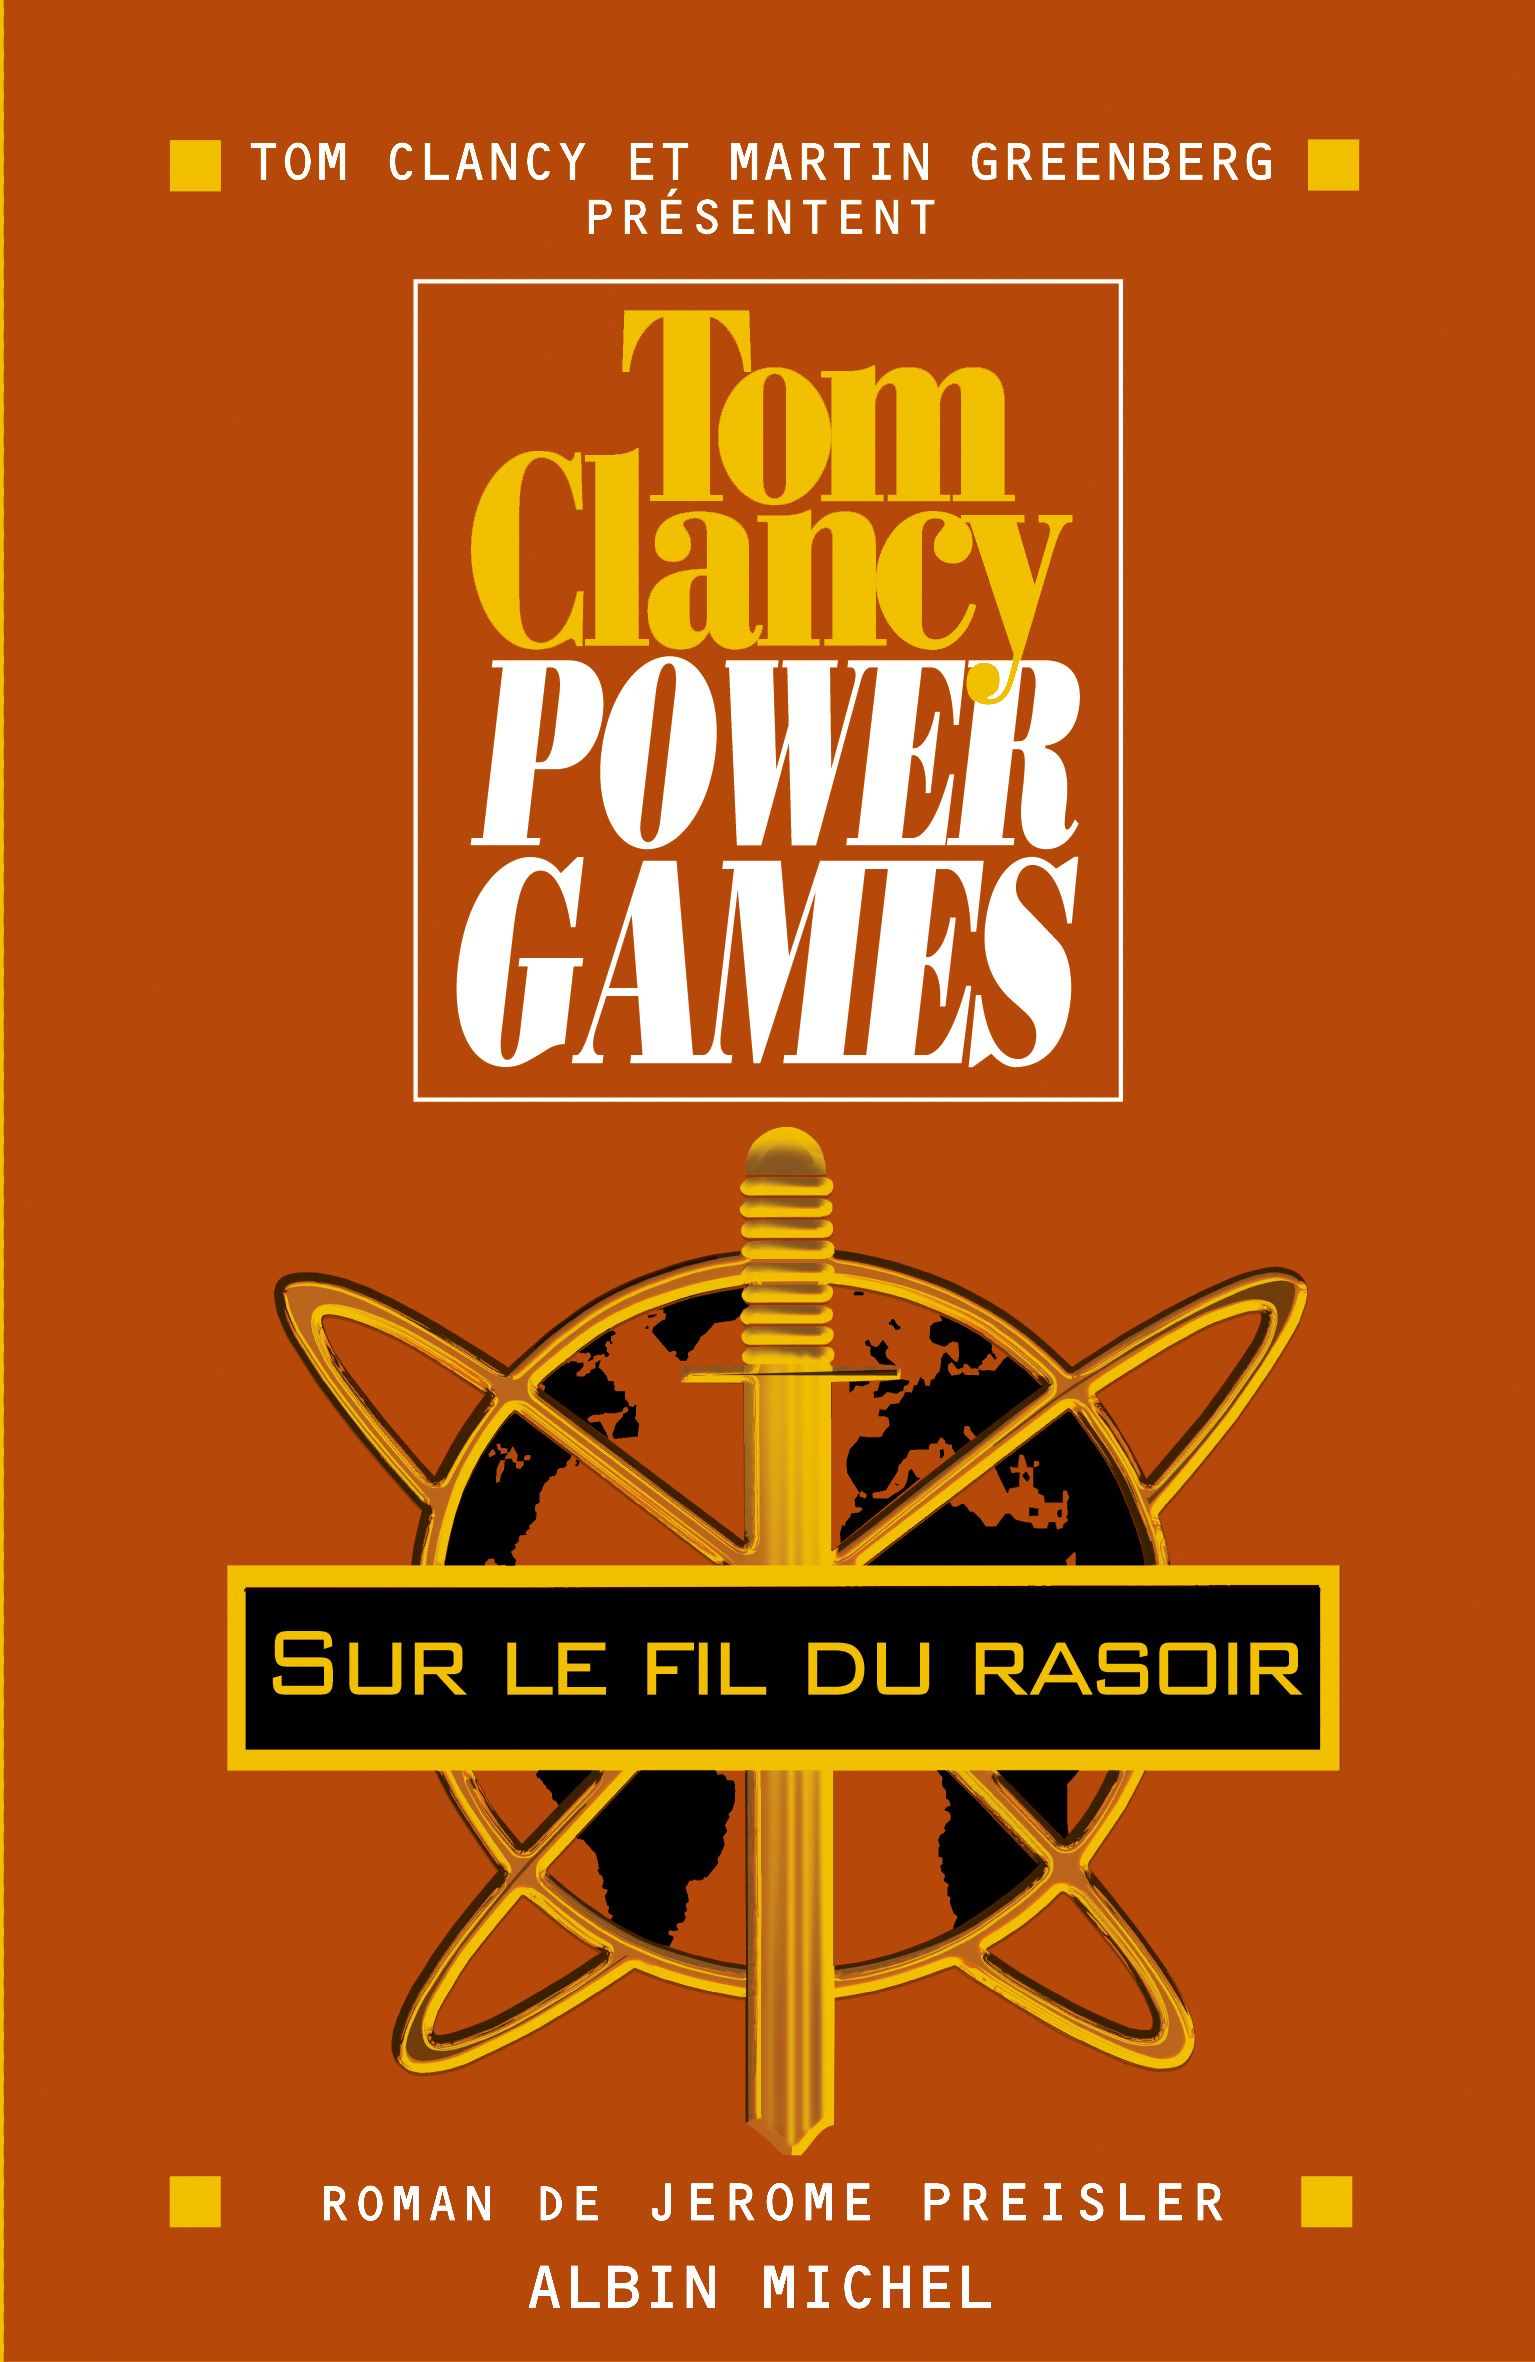 Couverture du livre Power games - tome 6